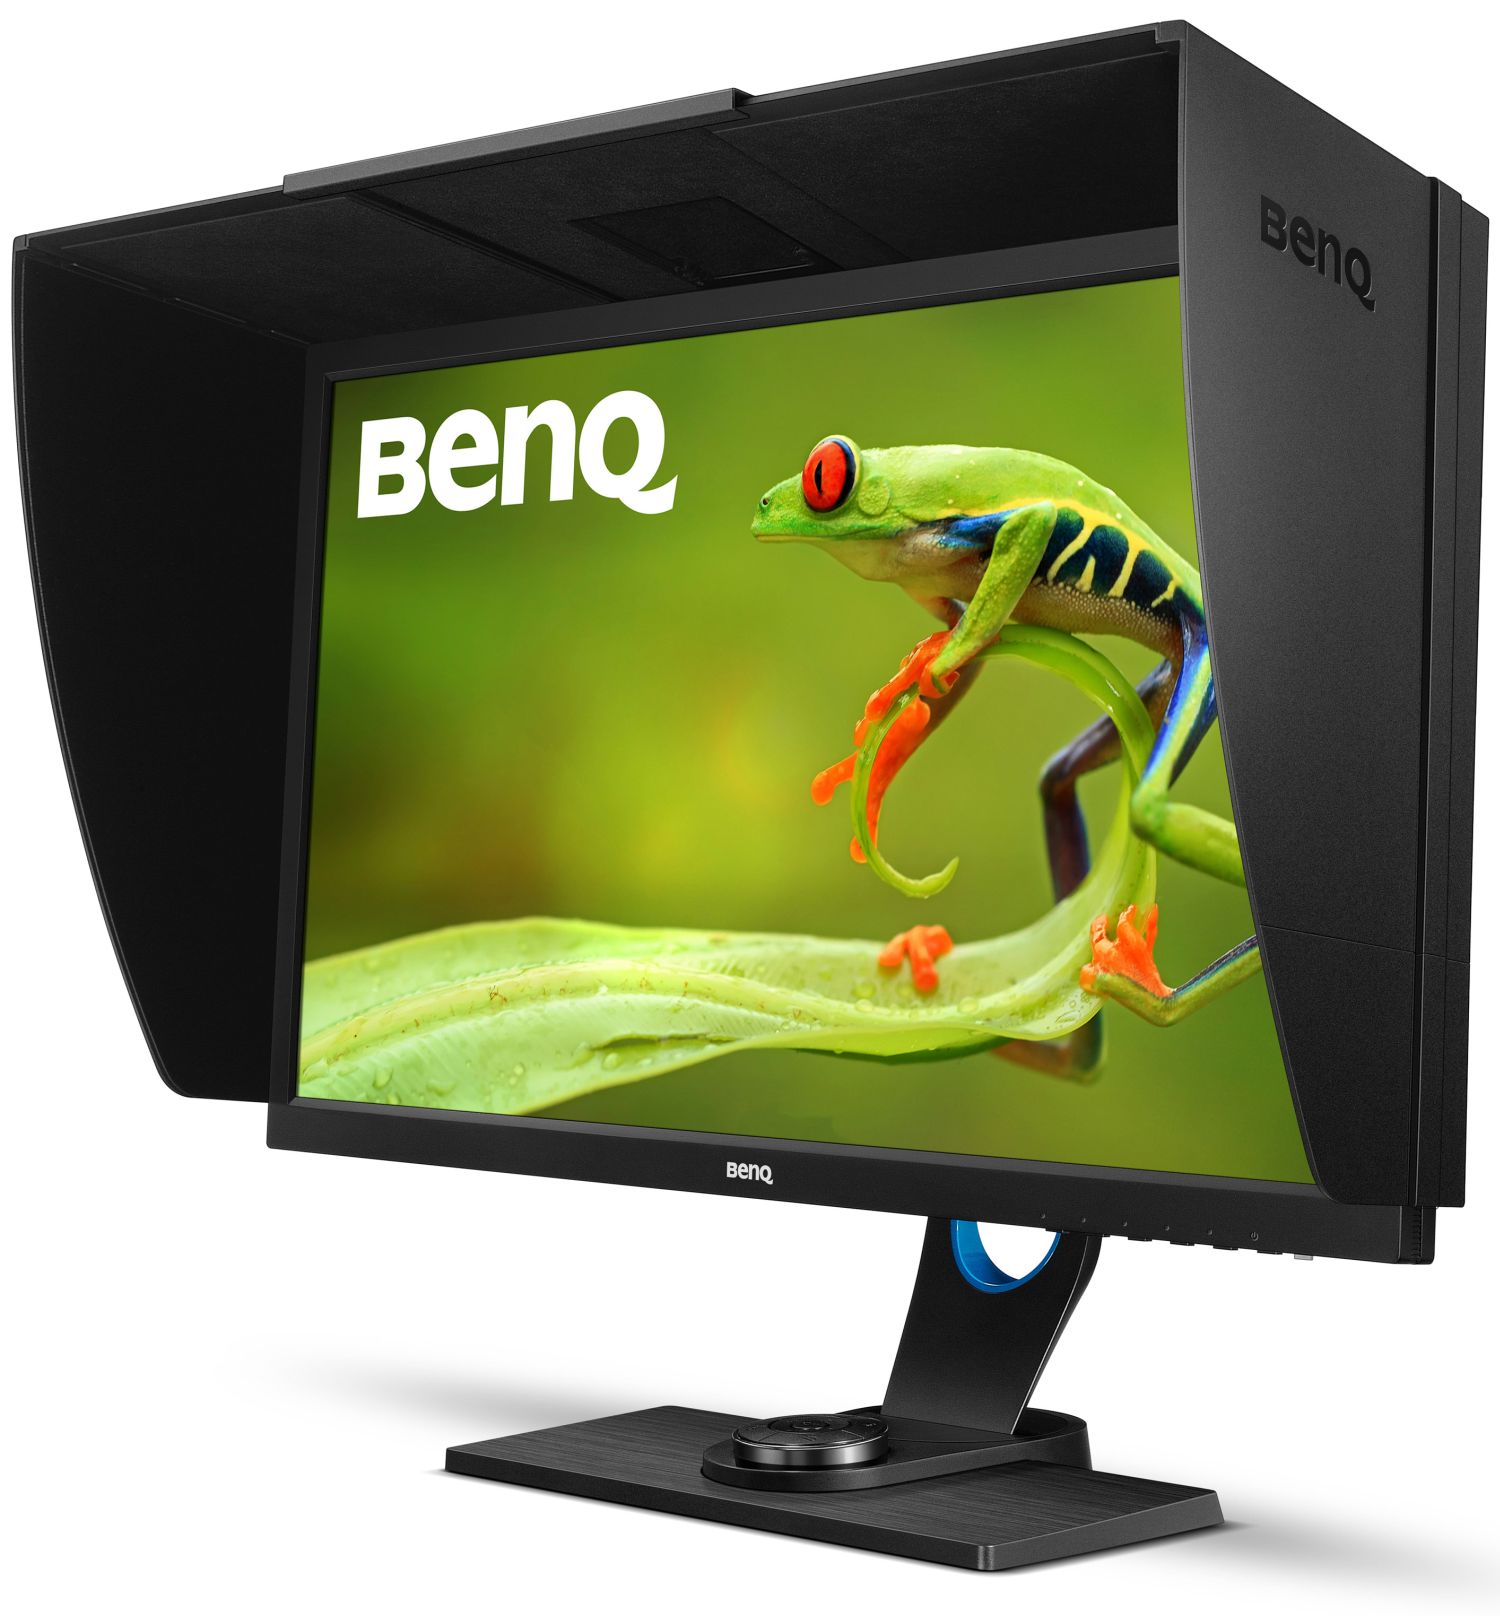 BenQ SW2700PT, monitor pro QHD | AV Magazine